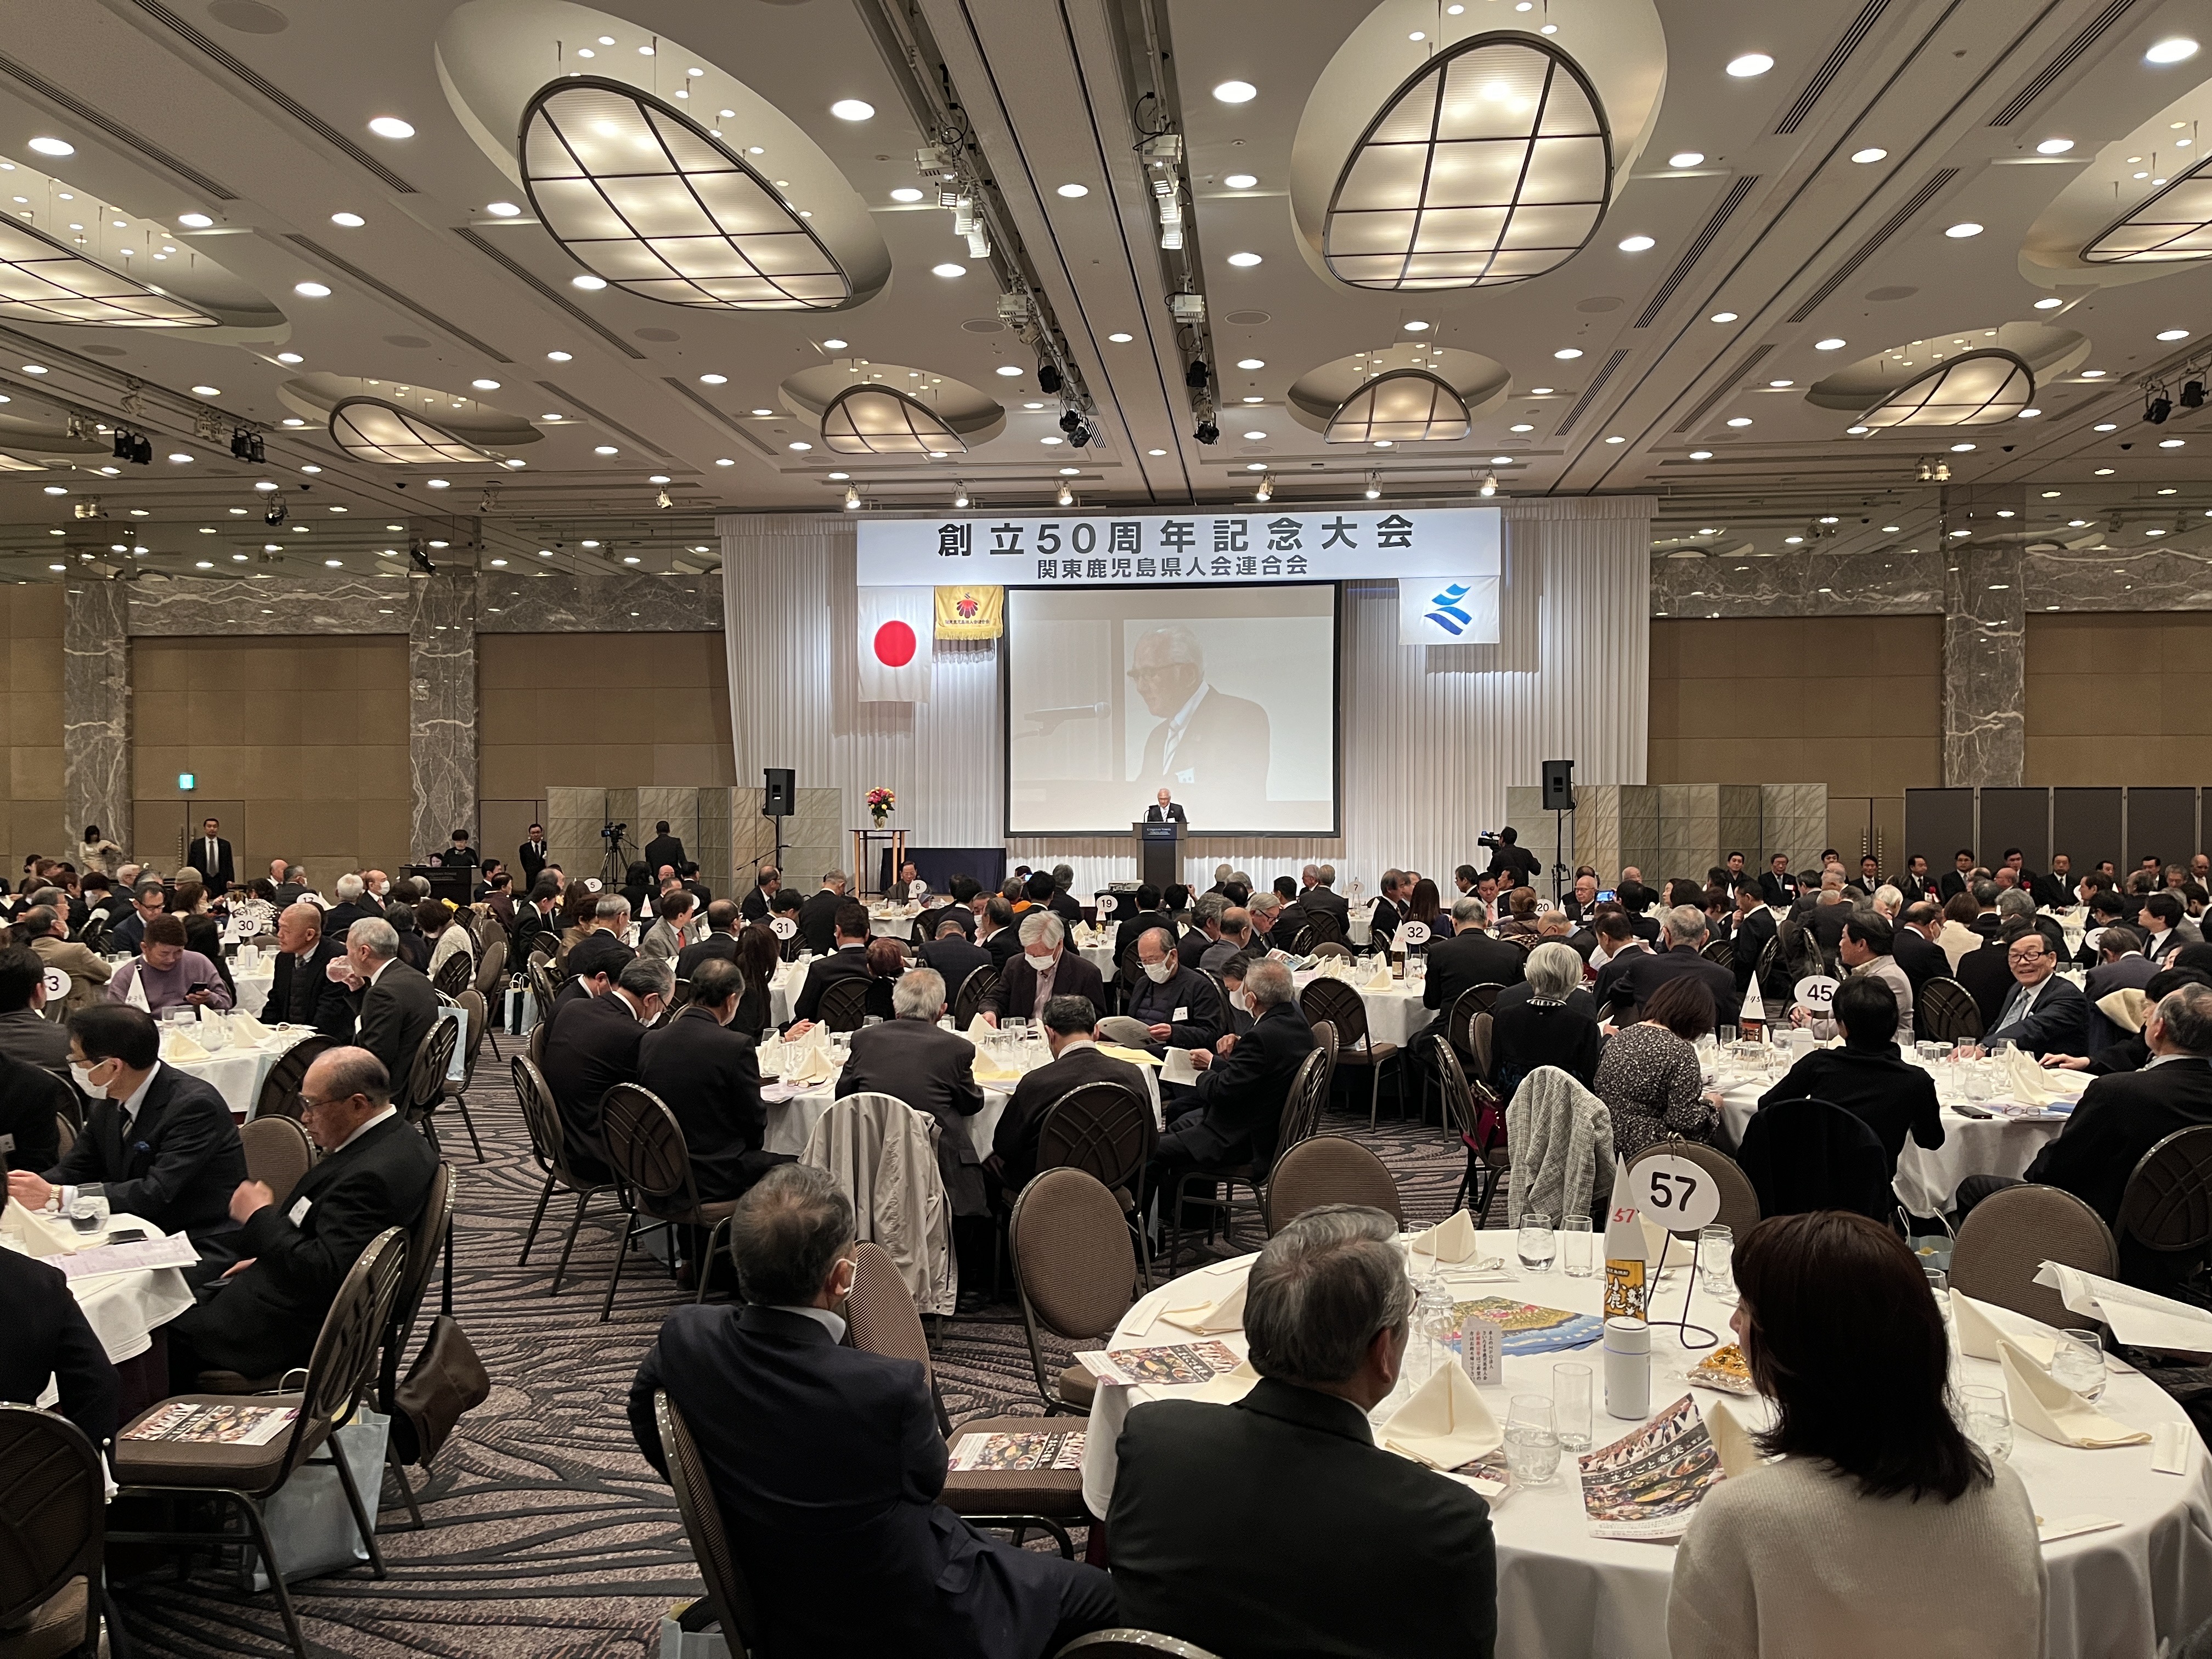 関東鹿児島県人会連合会「創立50周年記念大会」に出席いたしました